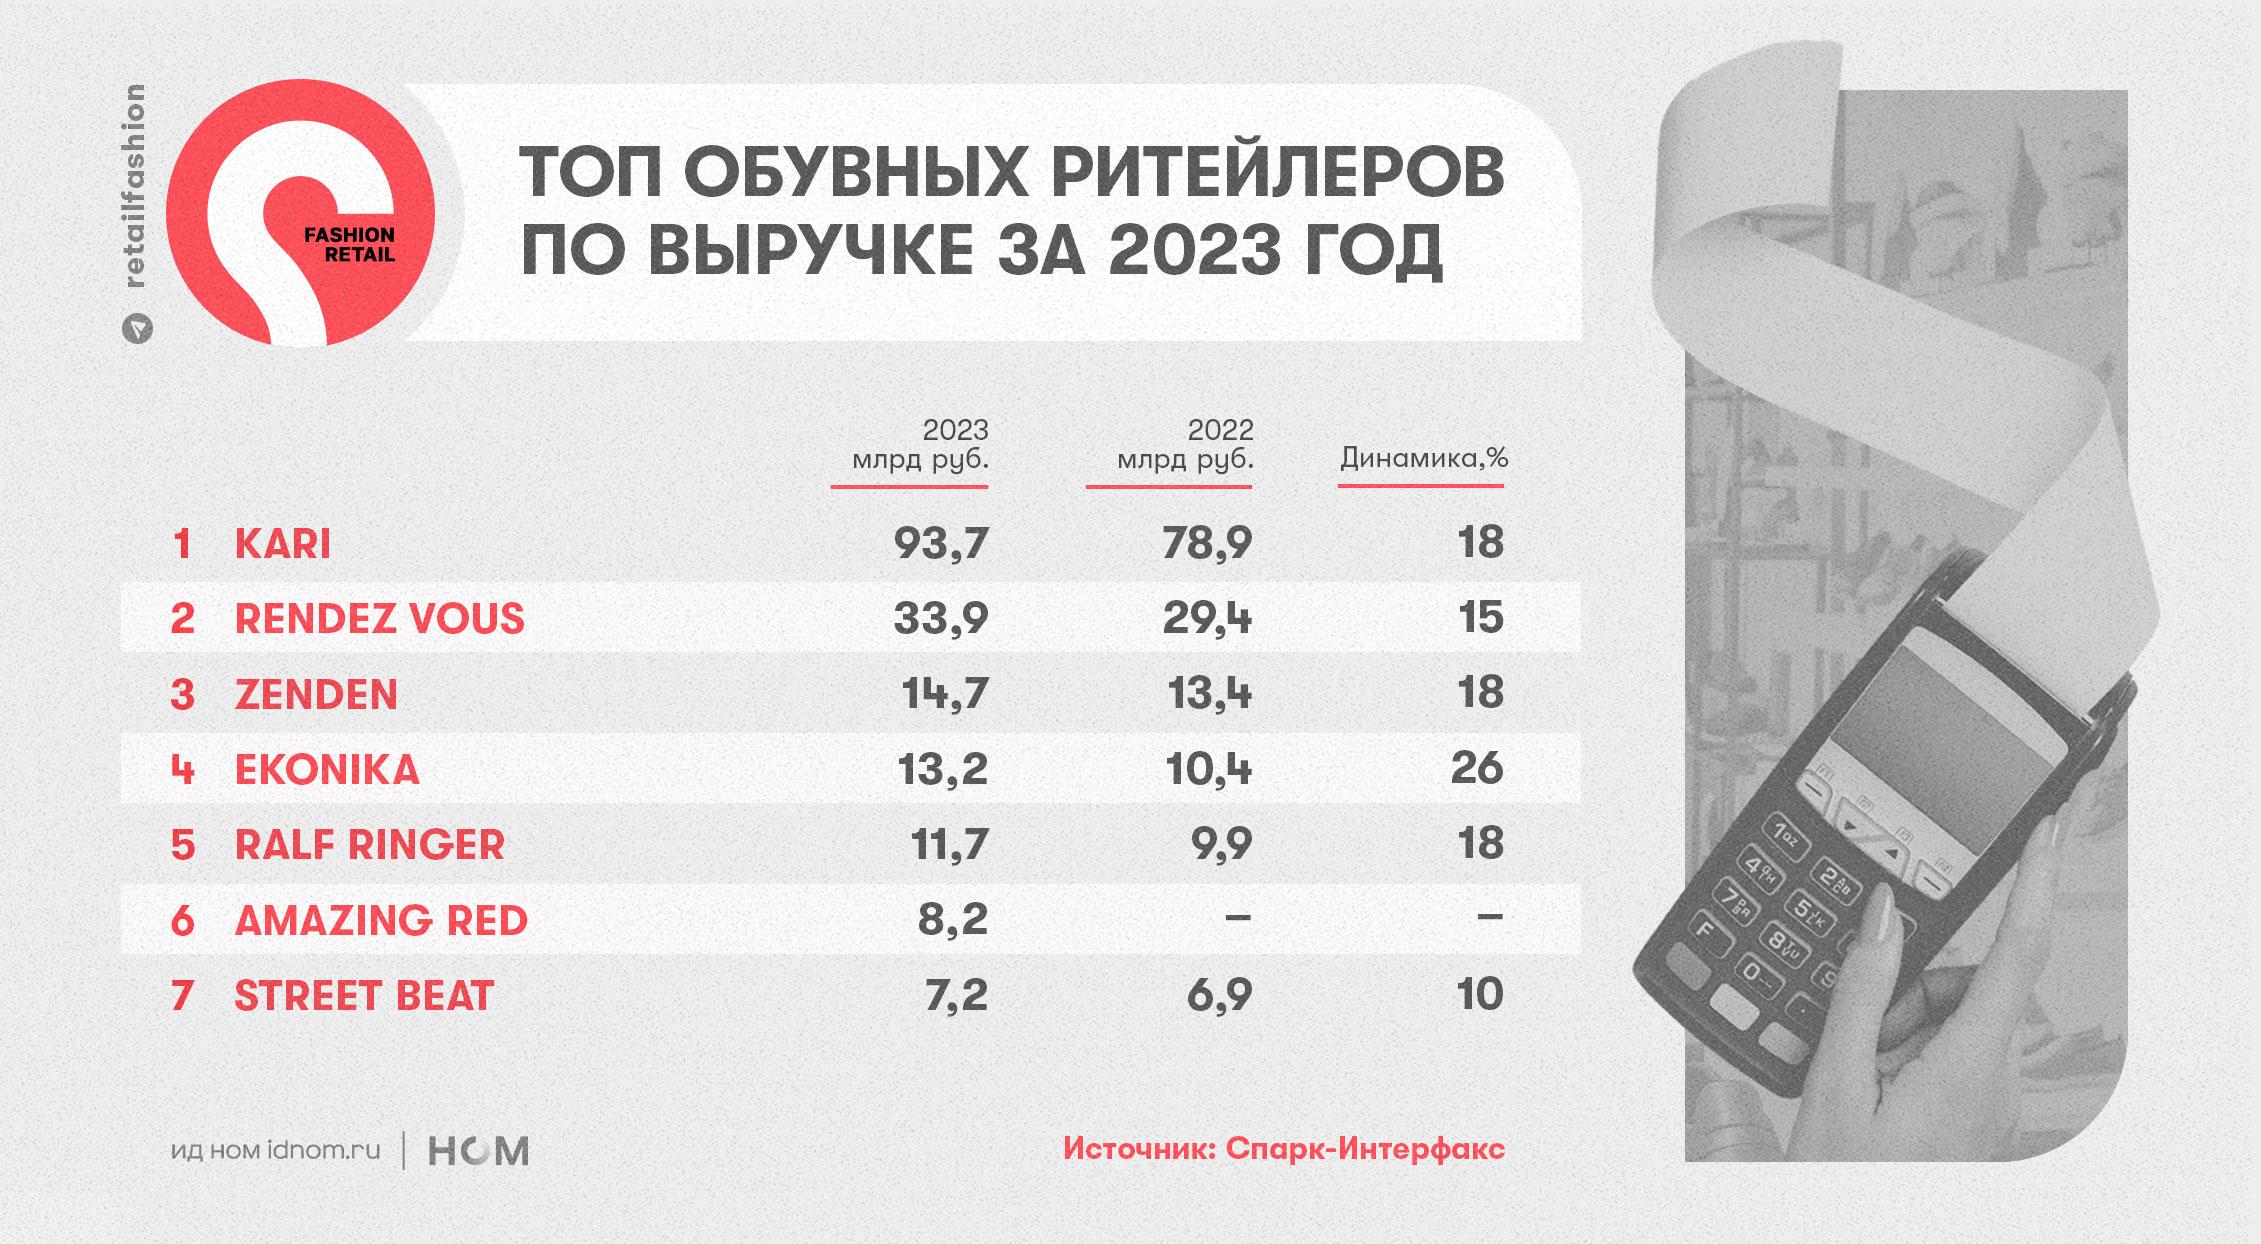 Рейтинг обувных компаний в России по итогам 2023 года